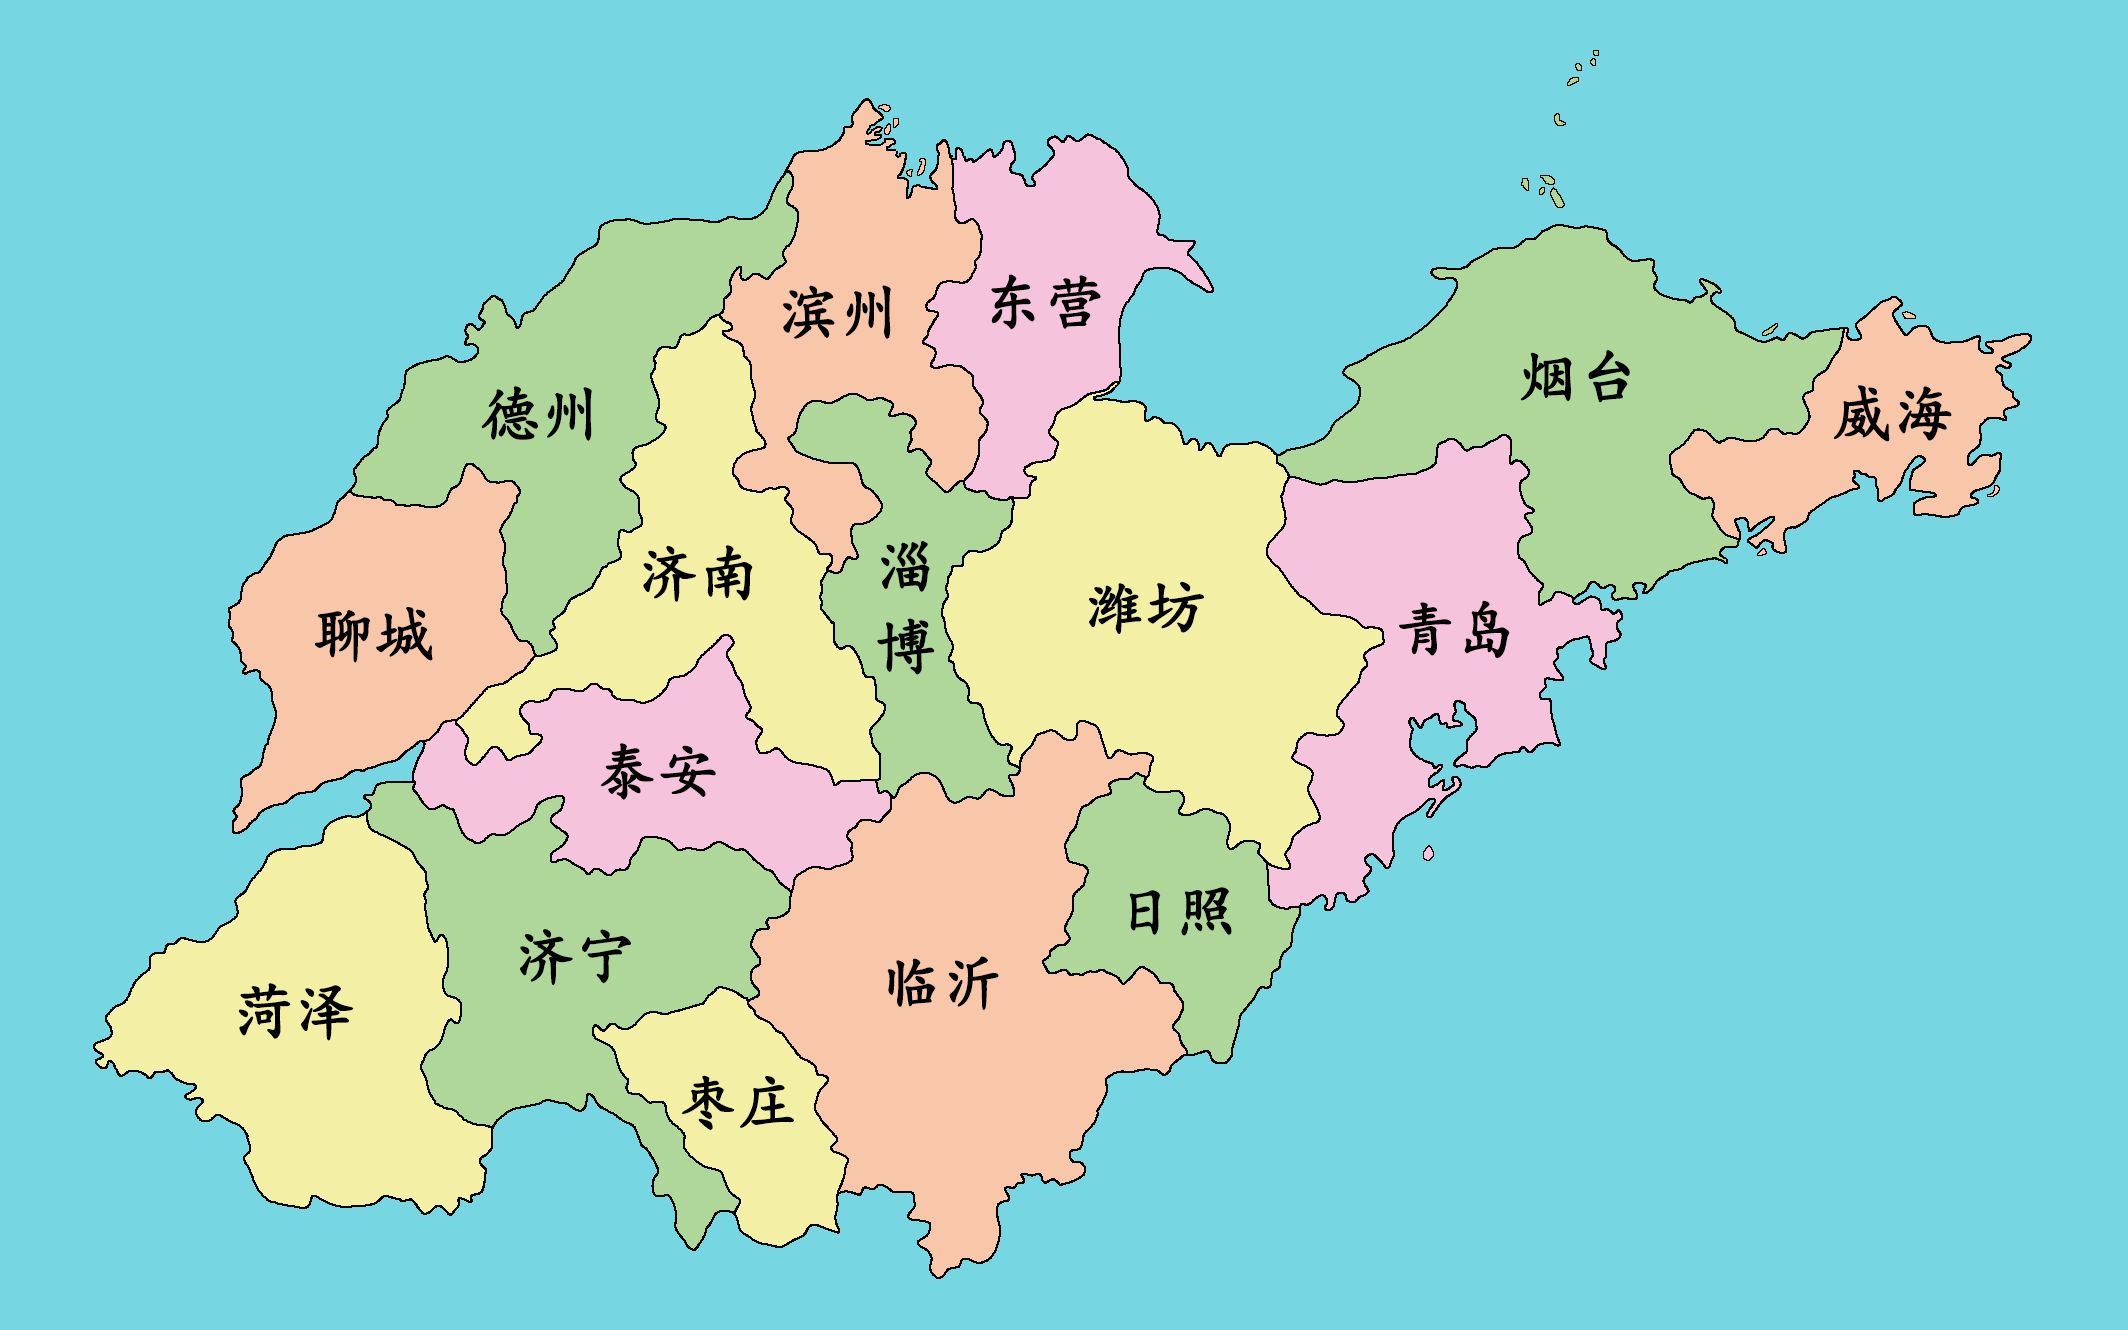 山东行政区划图 县级图片